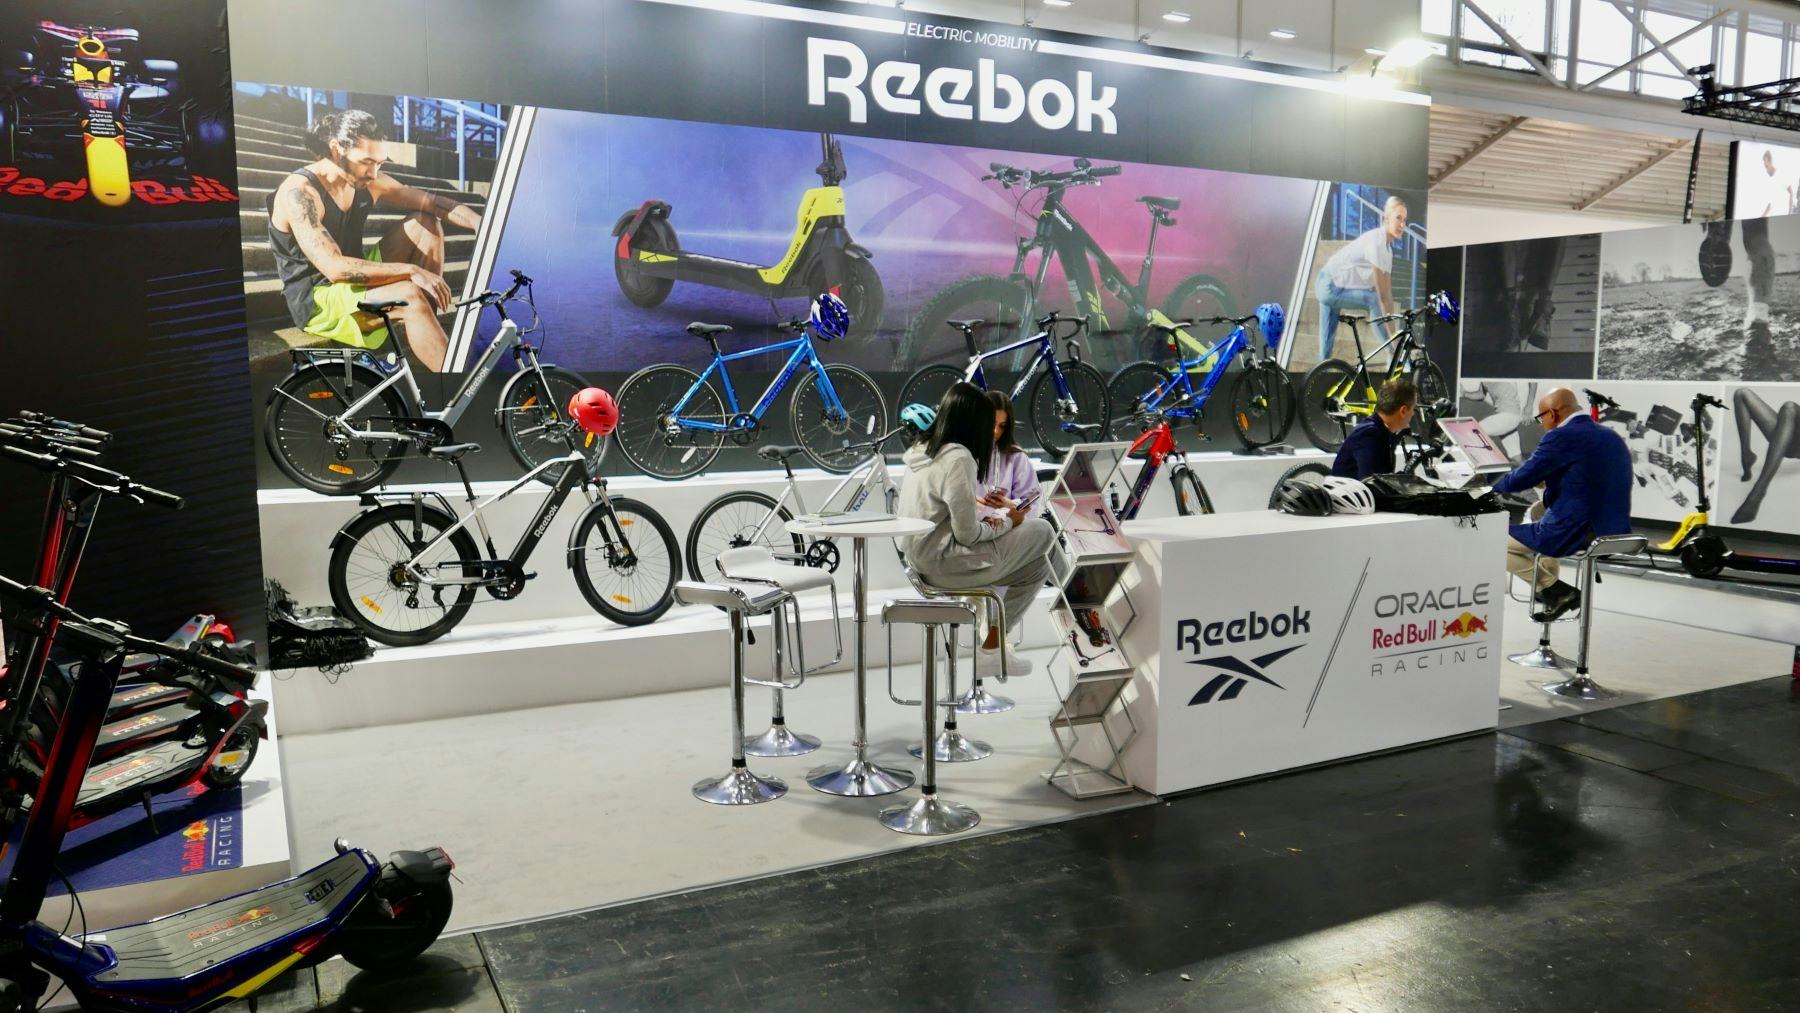 J&P Italia launches Reebok E-Mobility at Ispo Munich